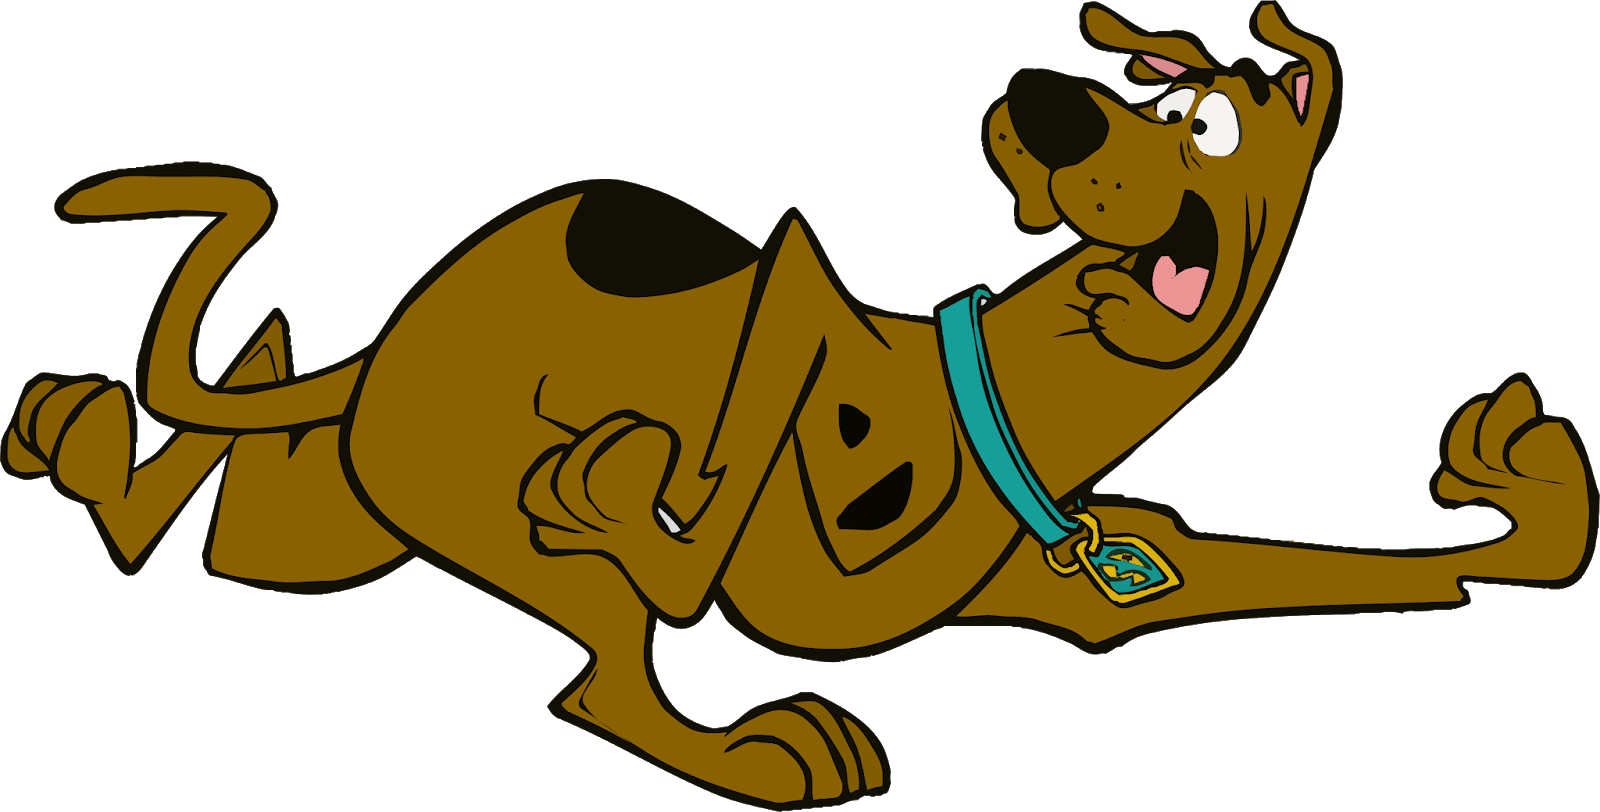 Download Scooby Doo Cartoon - Scooby Doo Cartoon Running PNG Image with ...